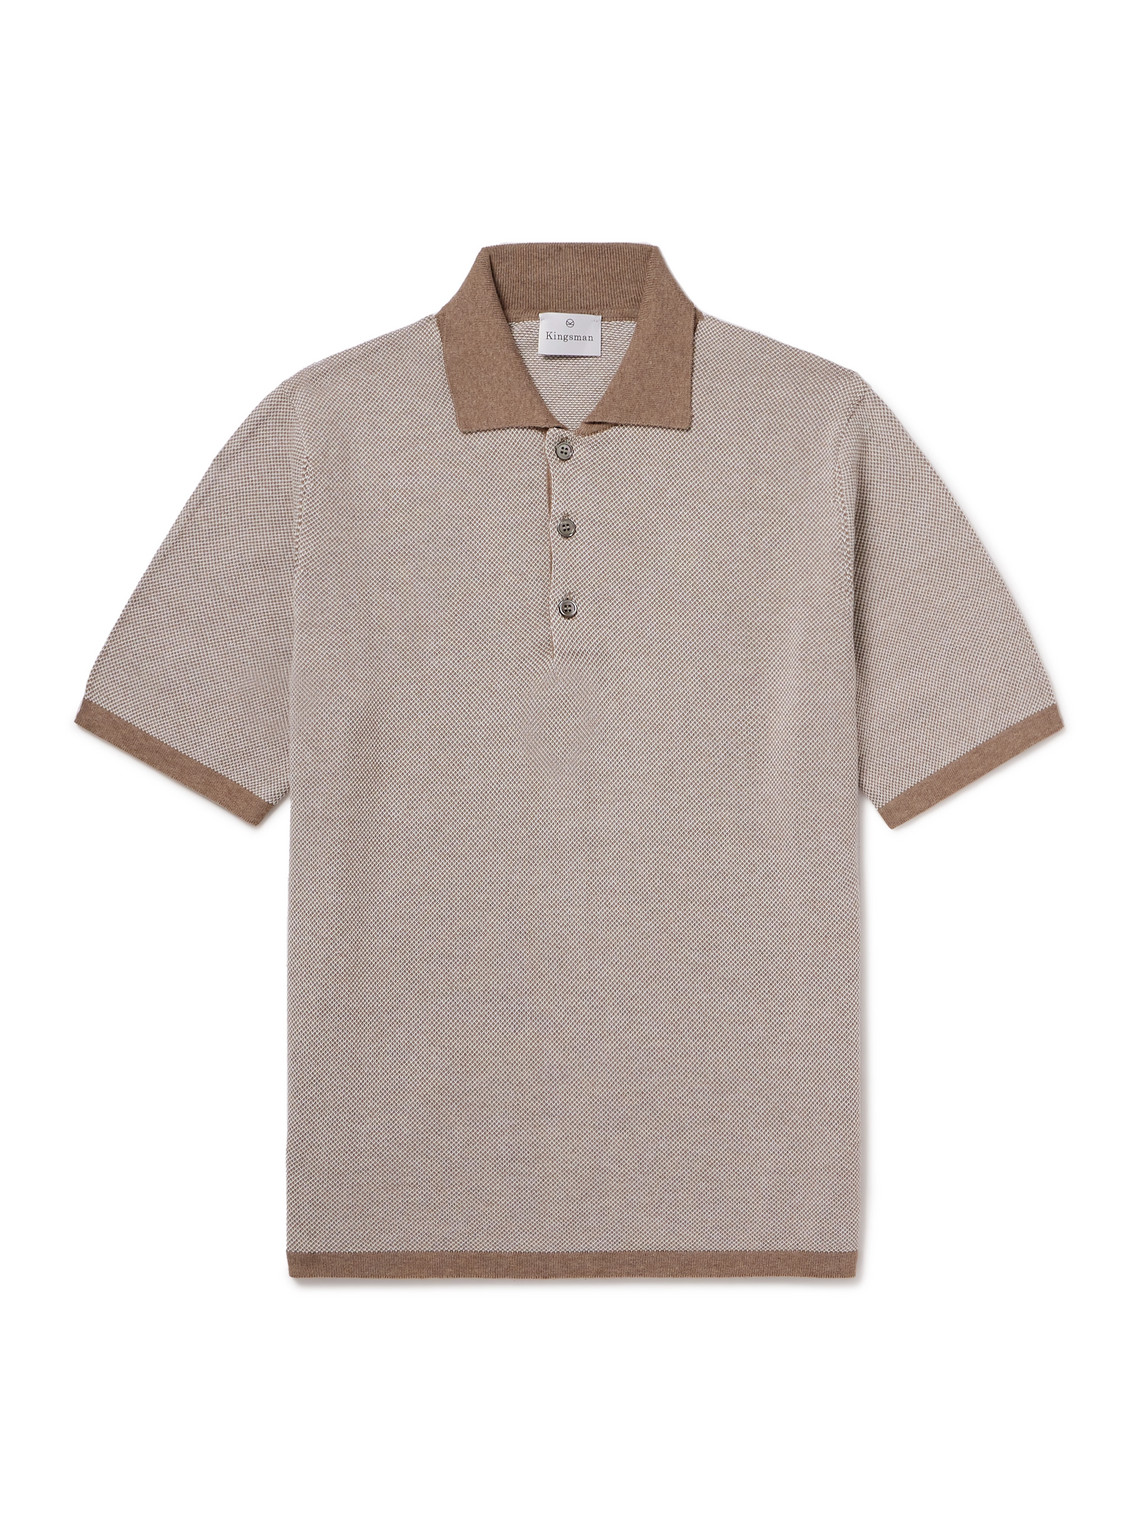 Kingsman Birdseye Cotton Polo Shirt In Brown